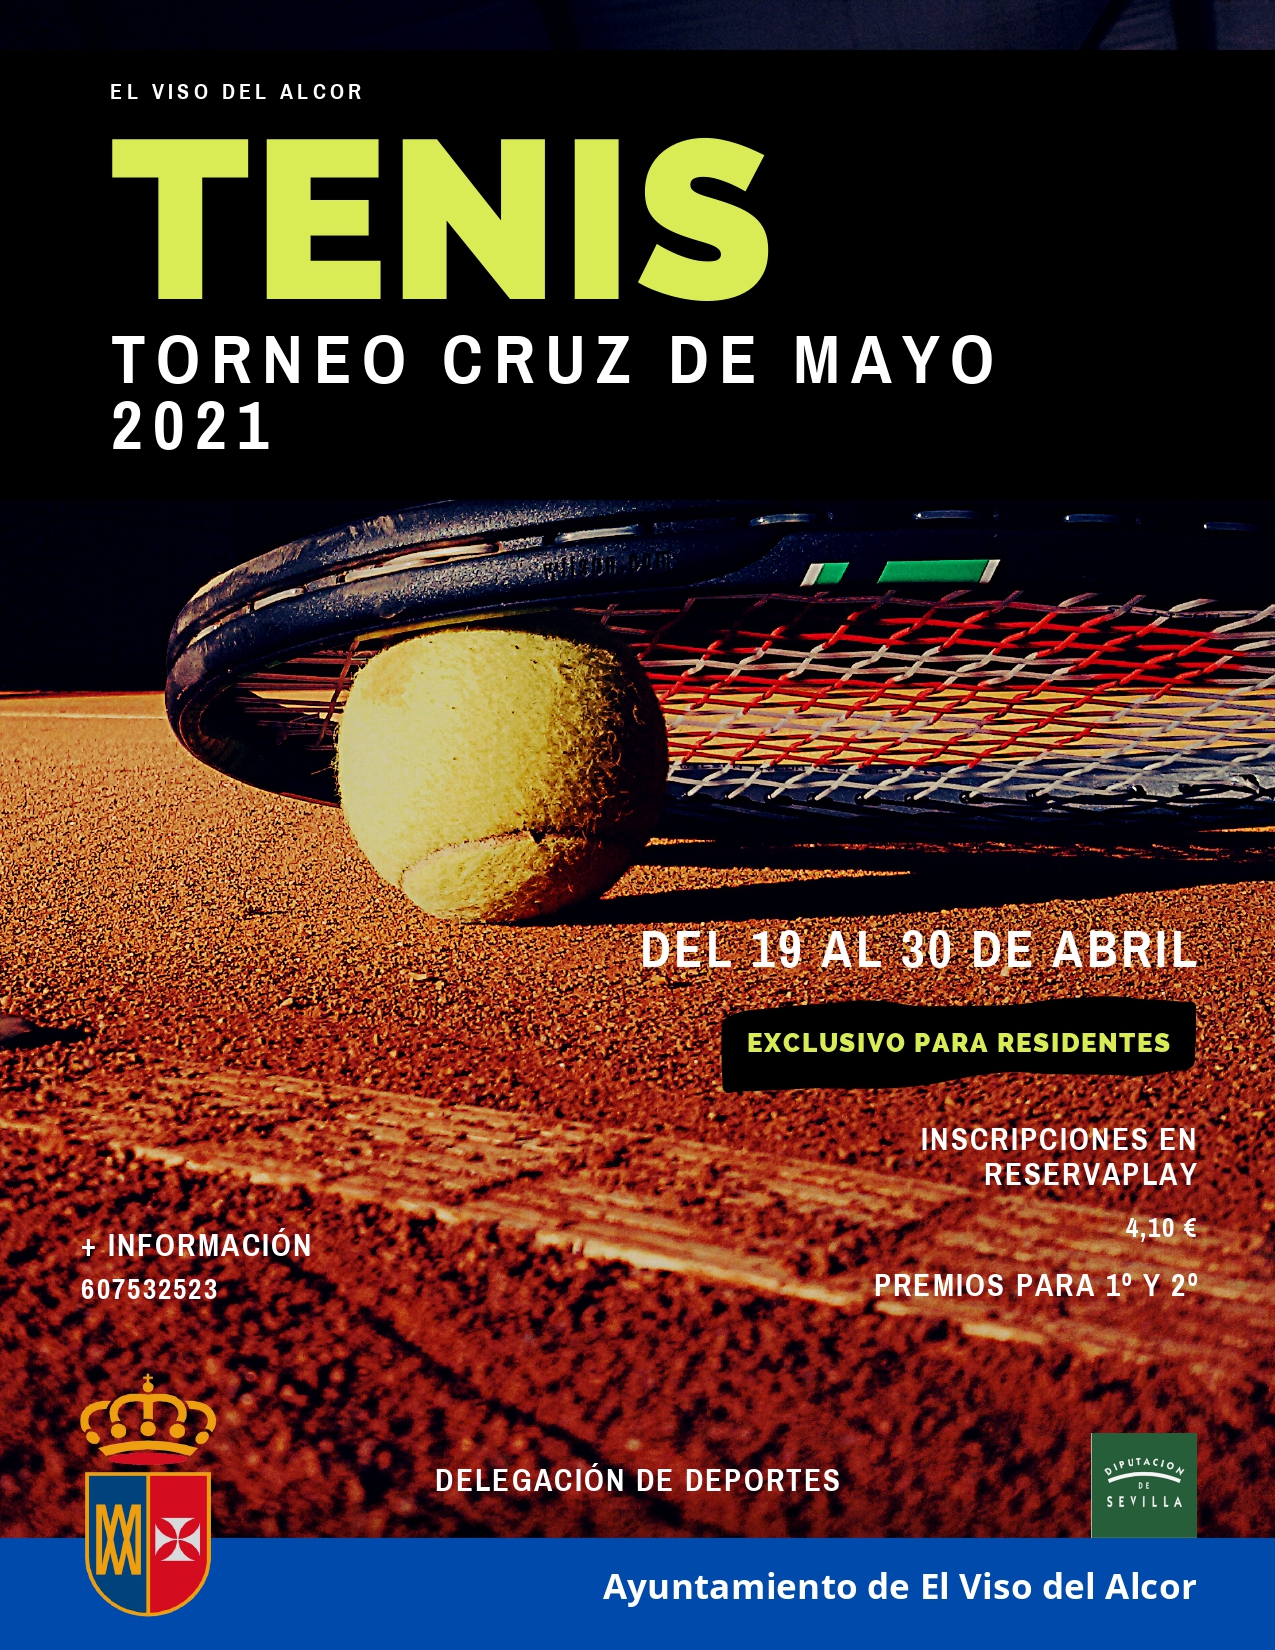 Torneo Cruz de mayo Tenis